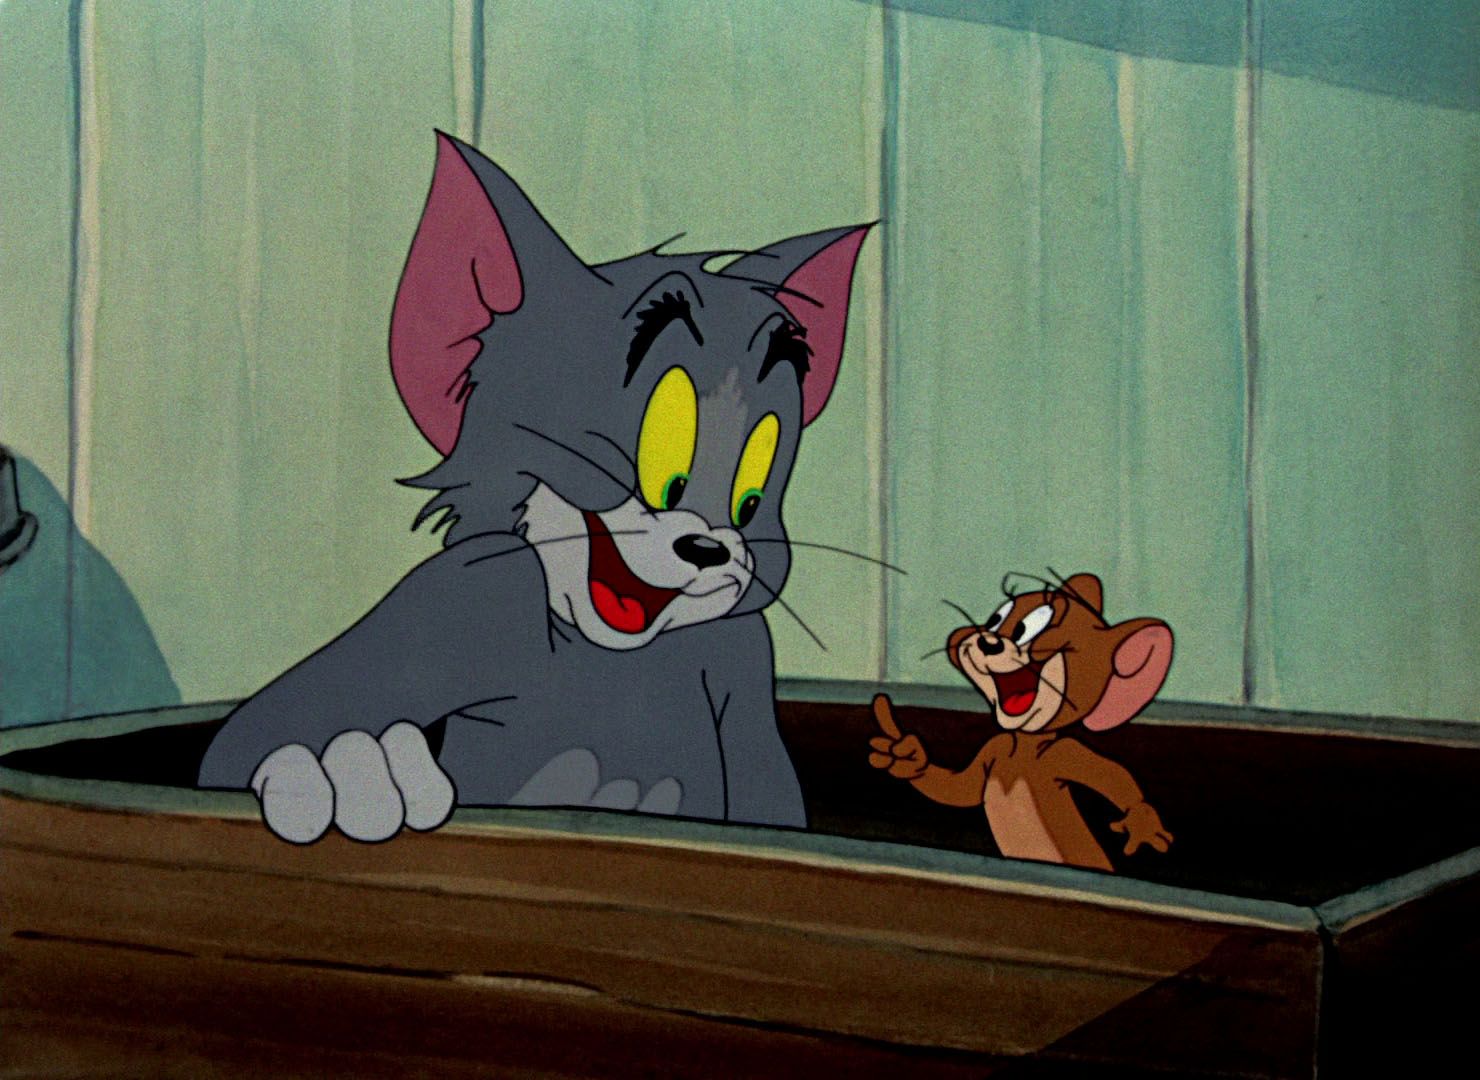 Том и джерри отрывки. Том и Джерри 1960. Том и Джерри (Tom and Jerry) 1940. Том и Джерри 1996.